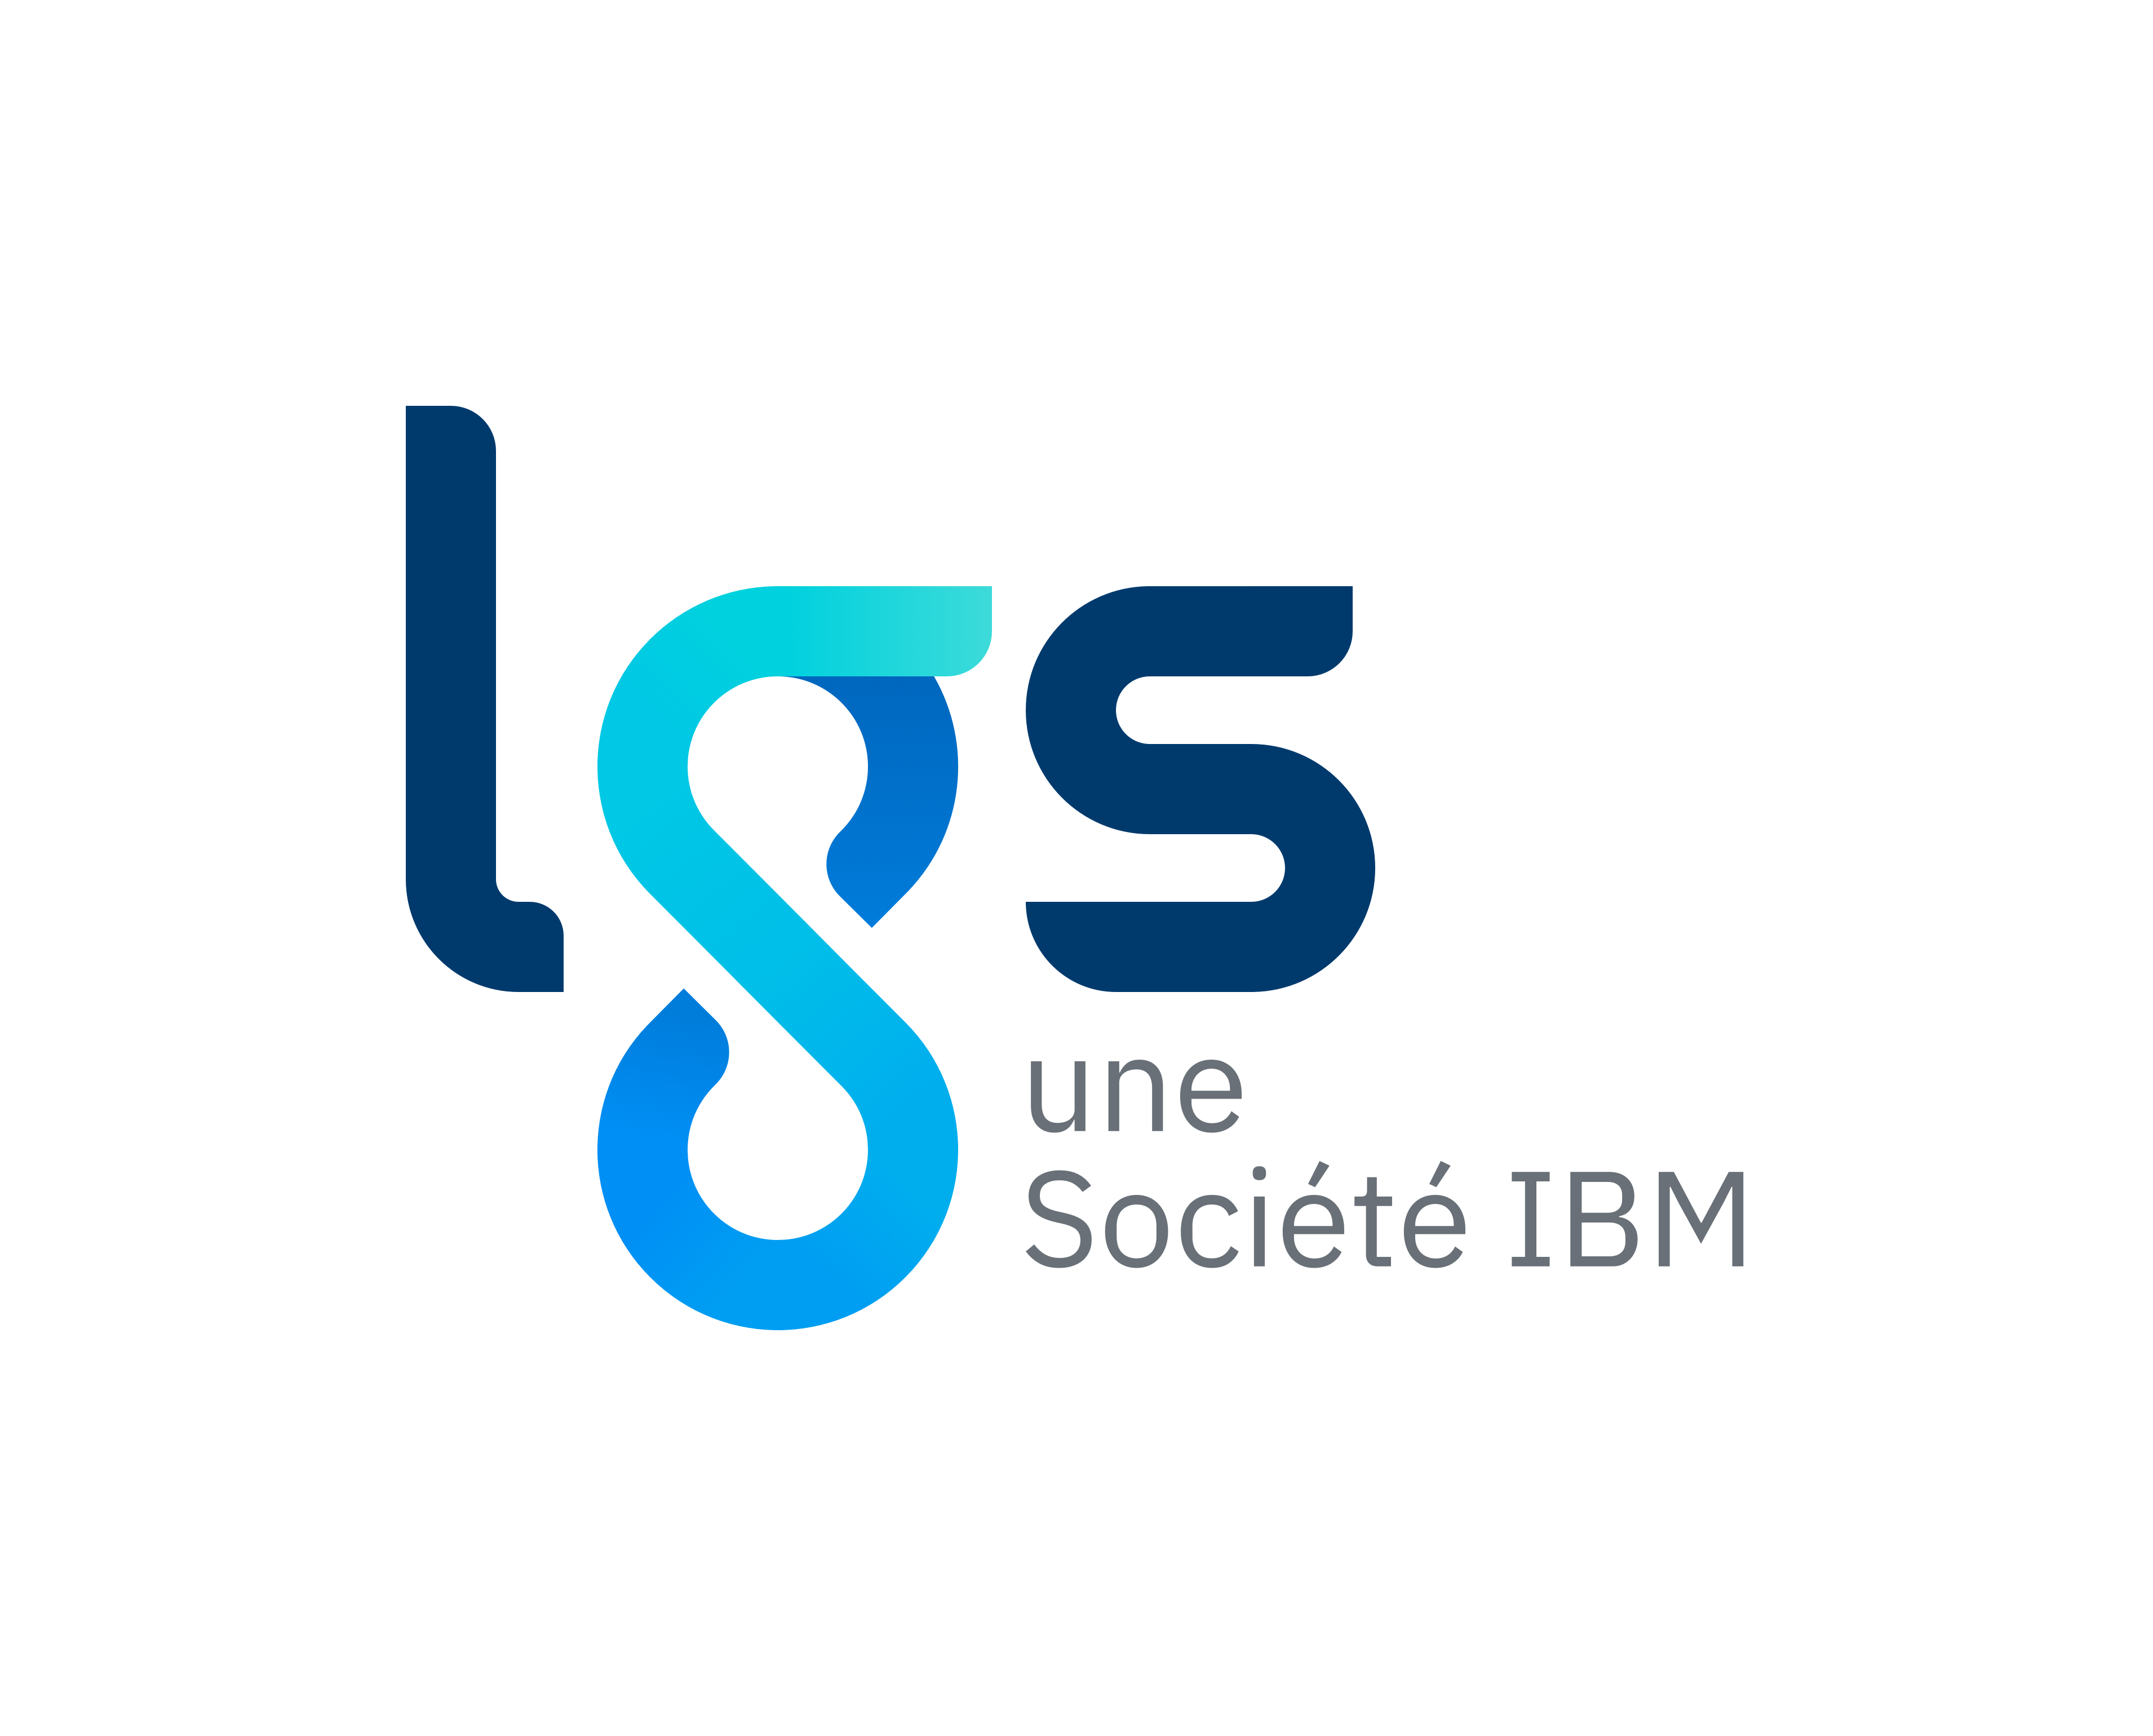 LGS une société IBM